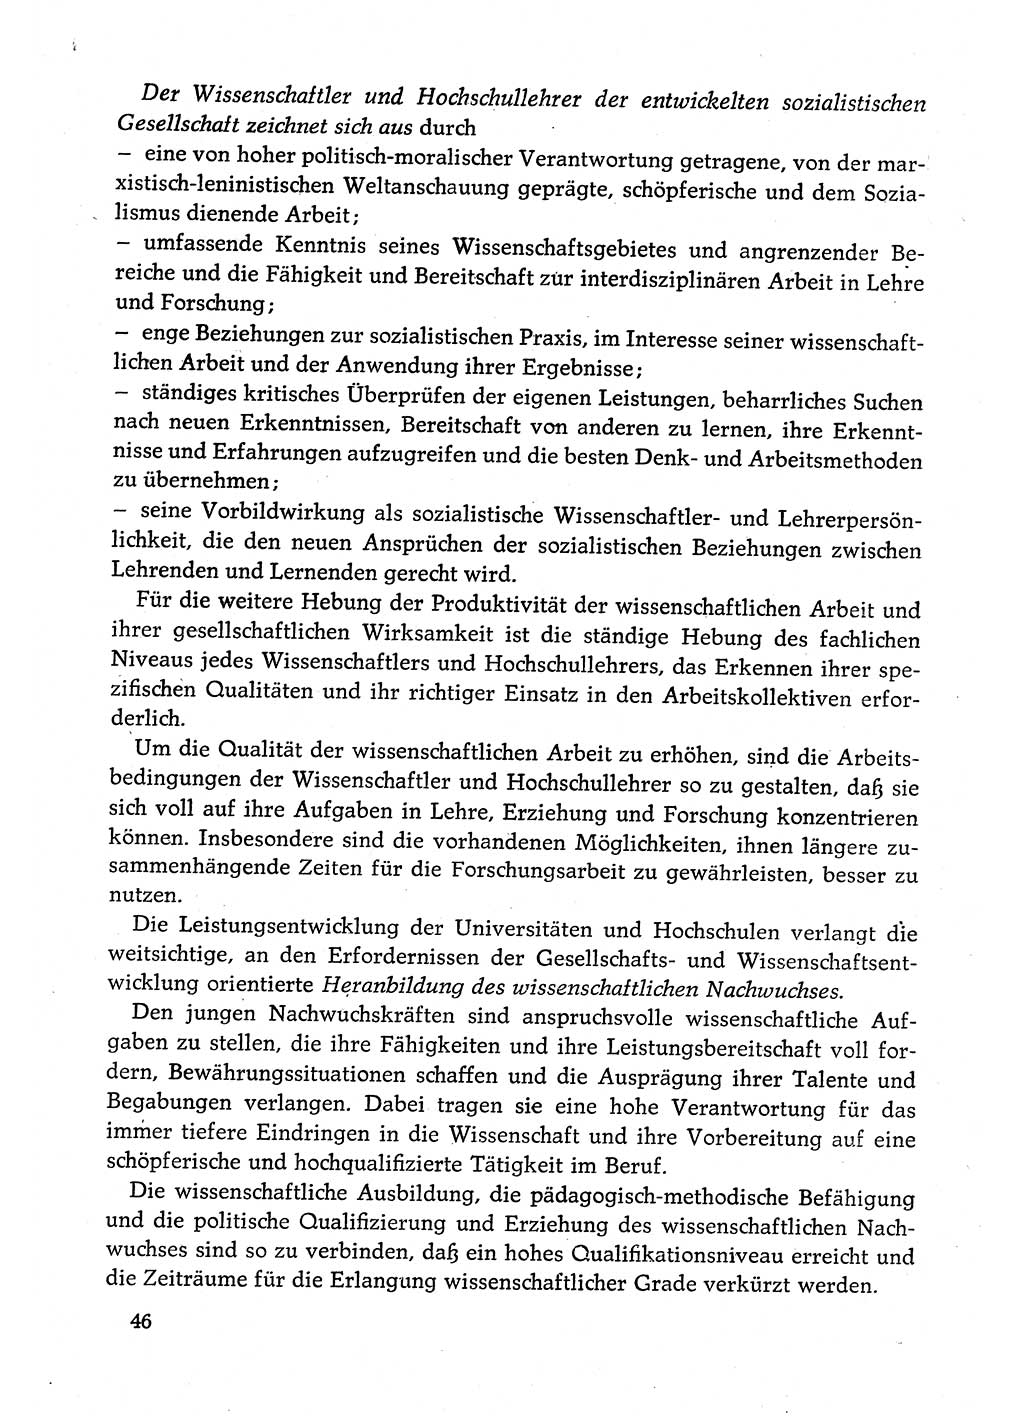 Dokumente der Sozialistischen Einheitspartei Deutschlands (SED) [Deutsche Demokratische Republik (DDR)] 1980-1981, Seite 46 (Dok. SED DDR 1980-1981, S. 46)